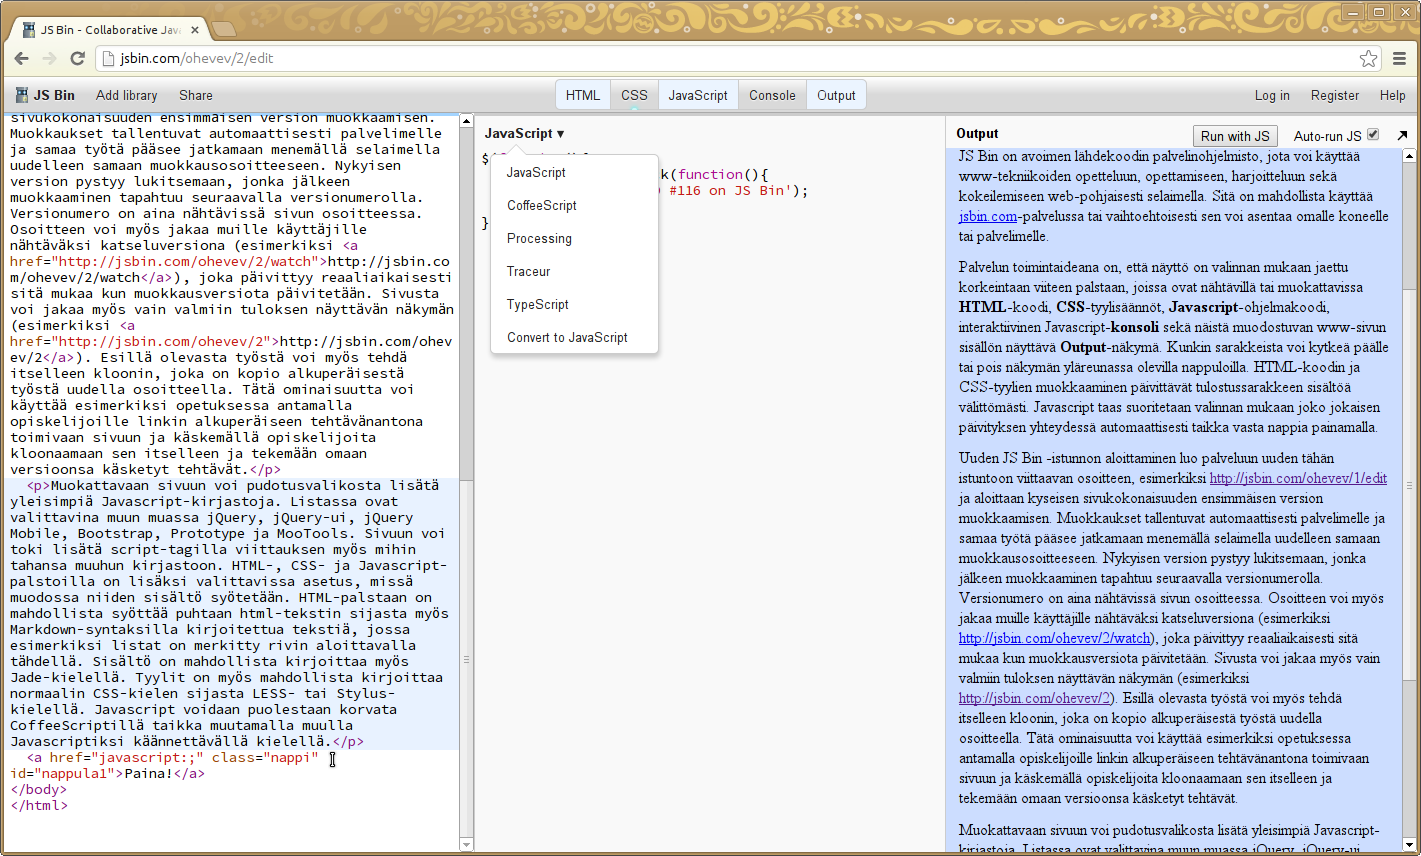 galleryimage:Ohjelmakoodi voi olla Javascriptin lisäksikirjoitettu CoffeeScript-, Processing-, Traceur- taiTypeScript-kielillä.